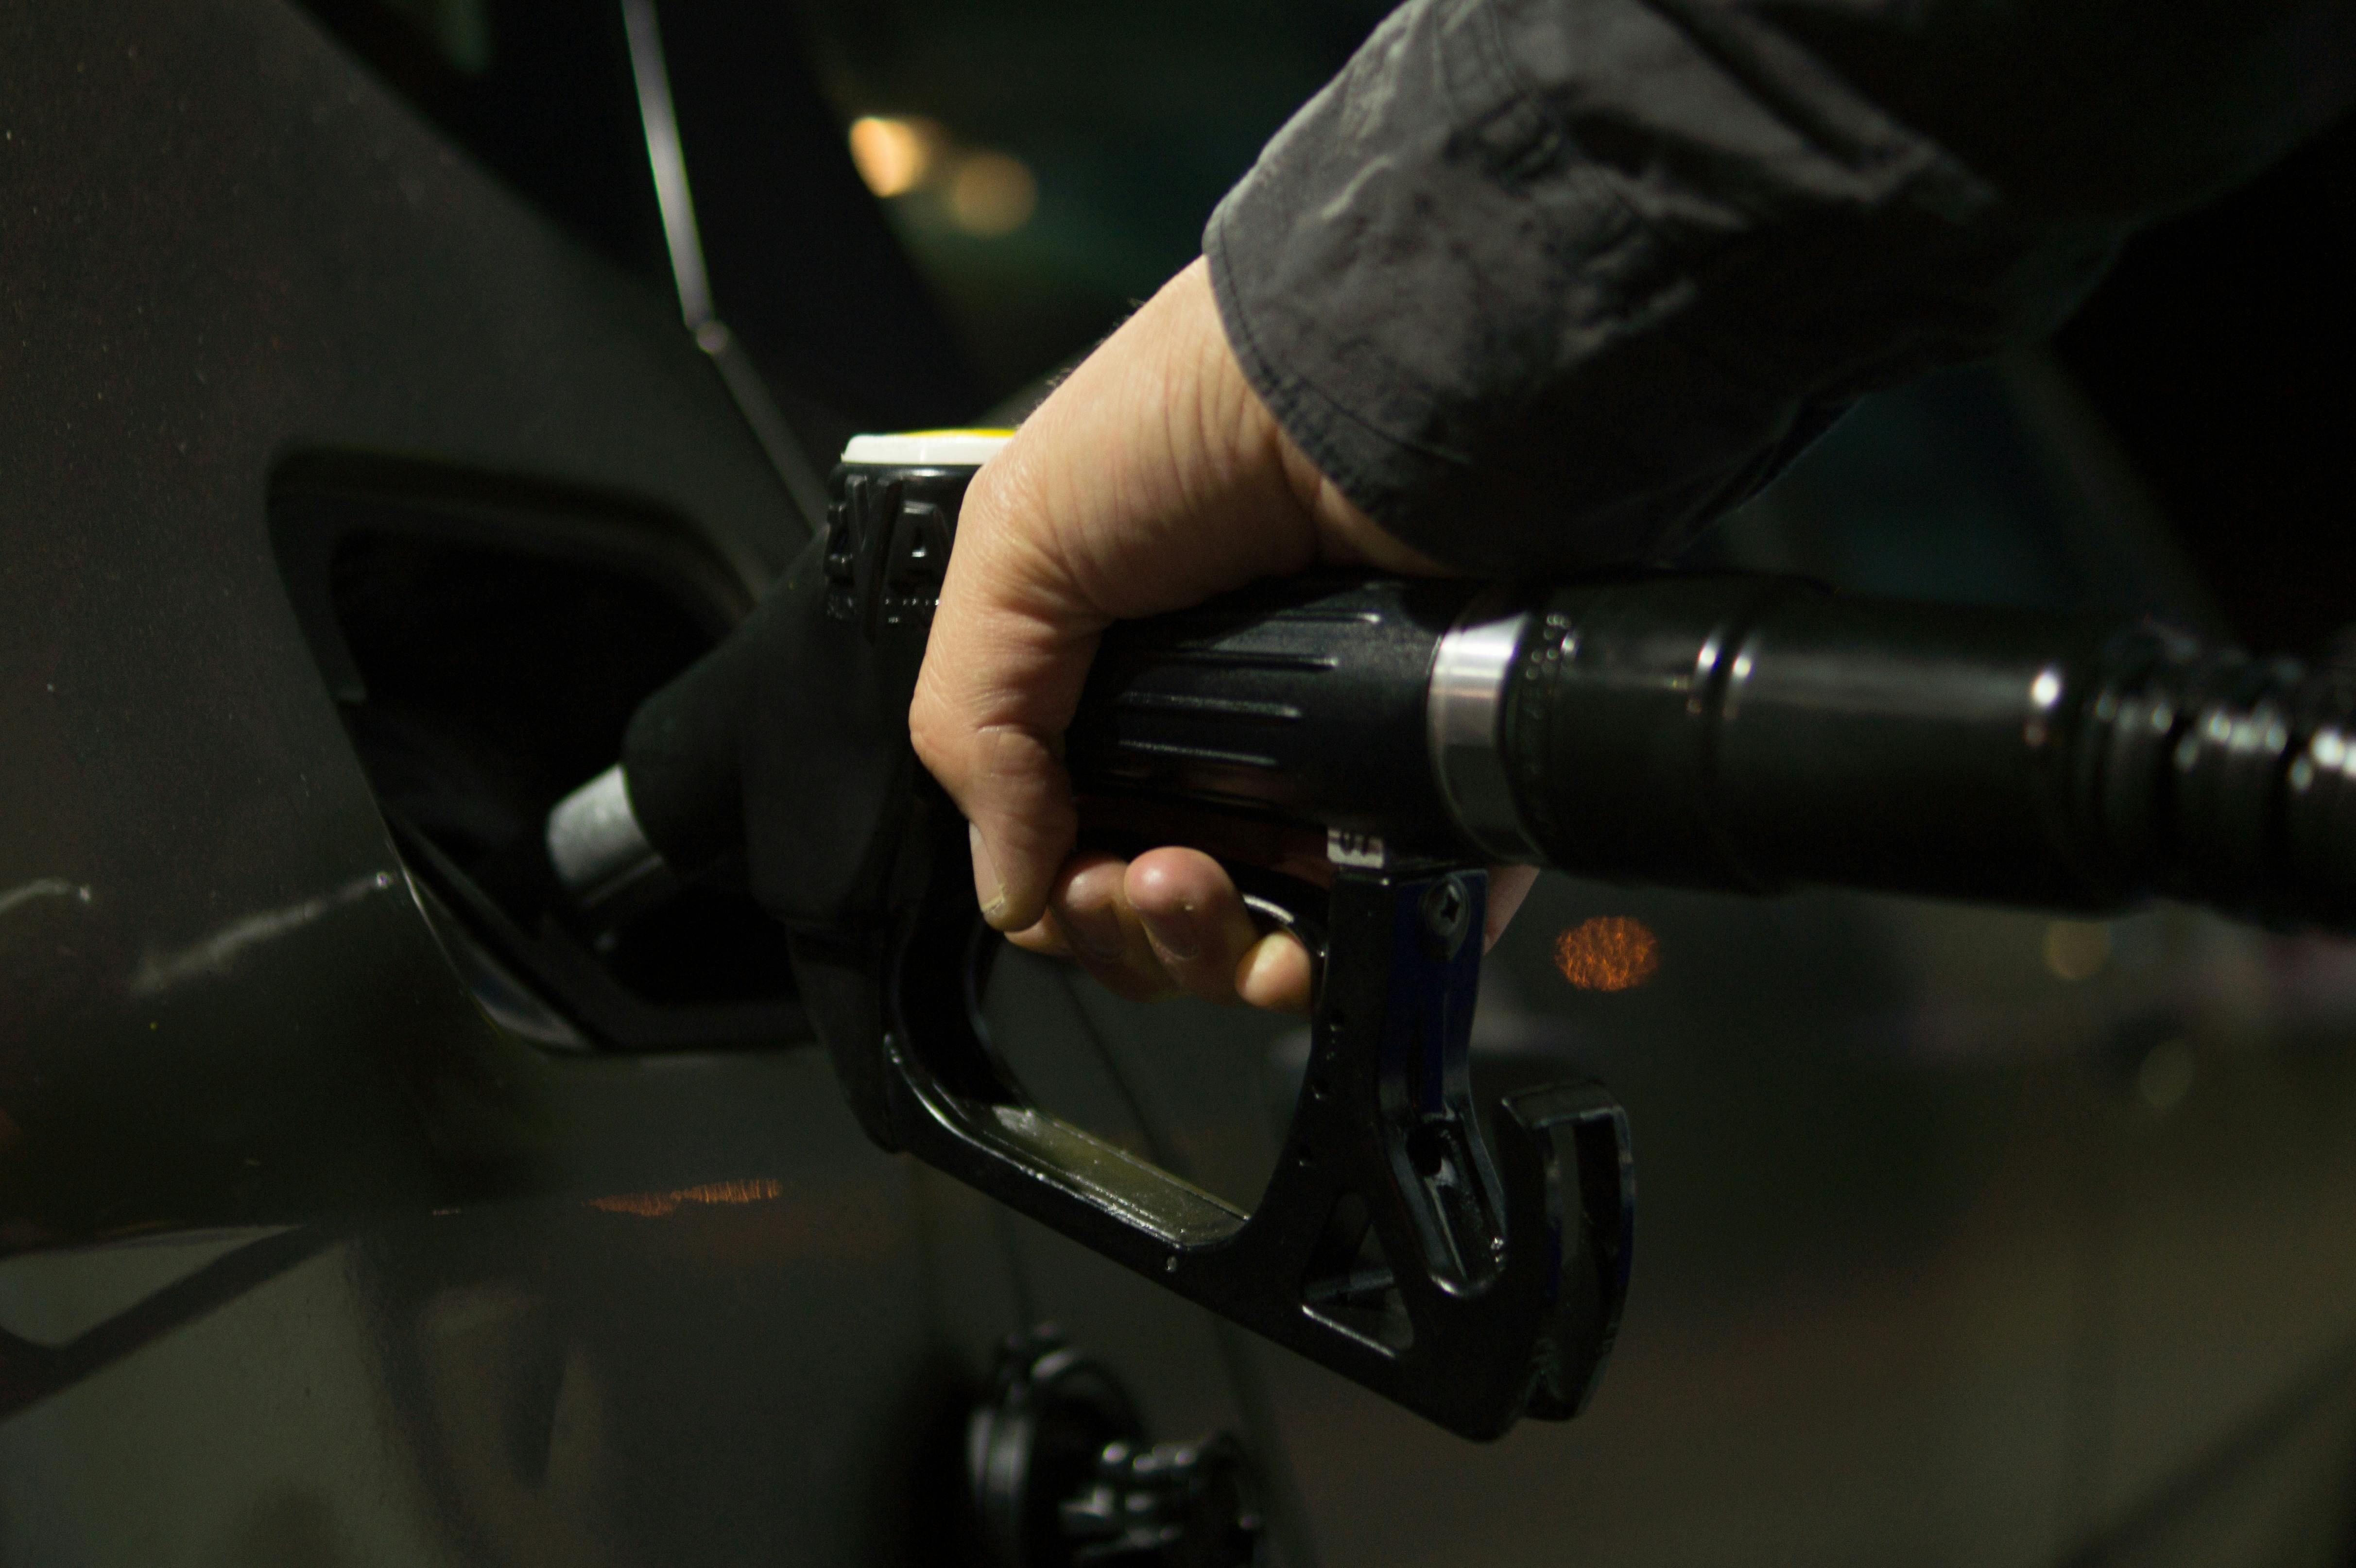 Рост цена на топливо - с июля будет новый акциз - как может подорожать бензин, дизтопливо